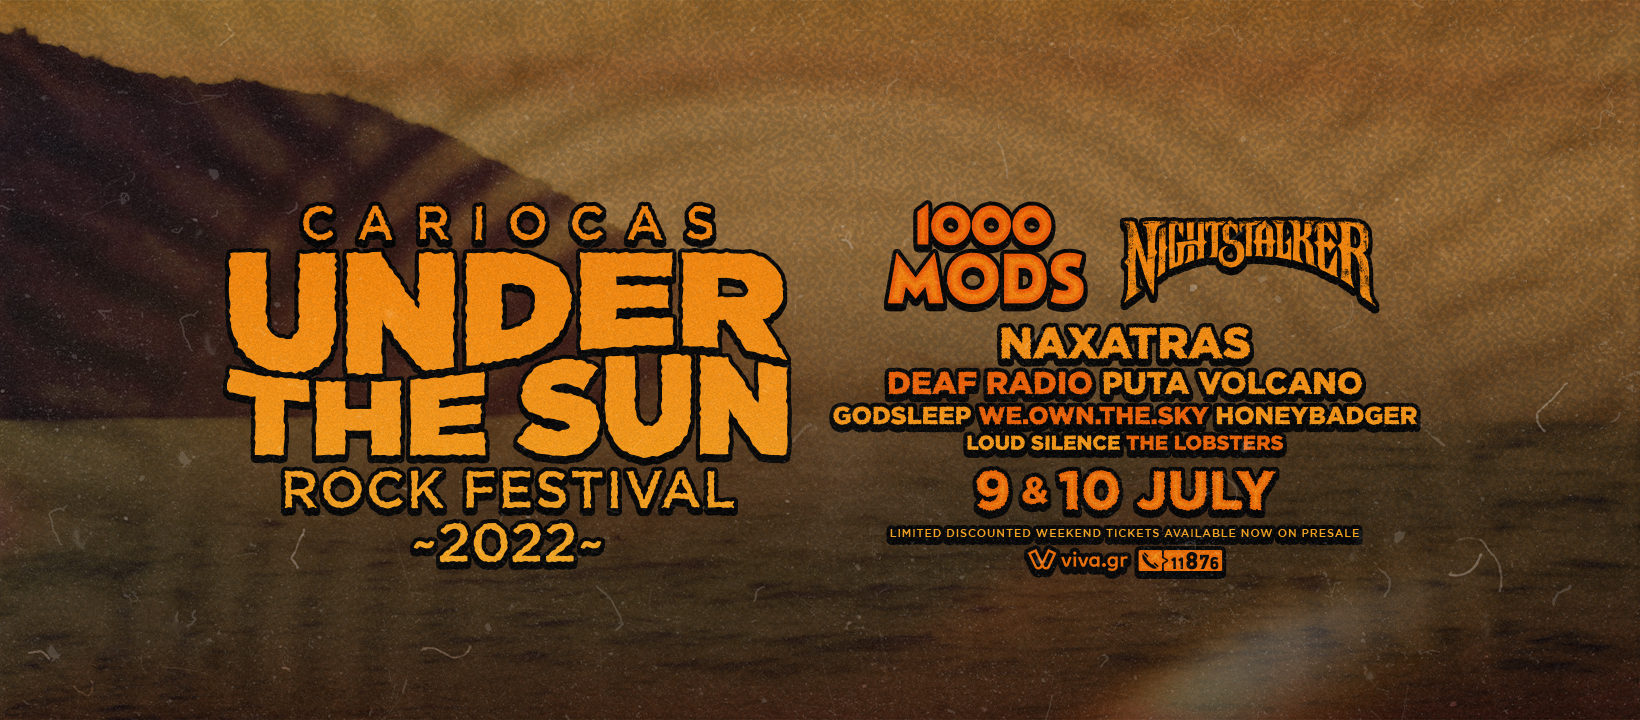 Under the Sun Cariocas Rock Festival 2022 - line up